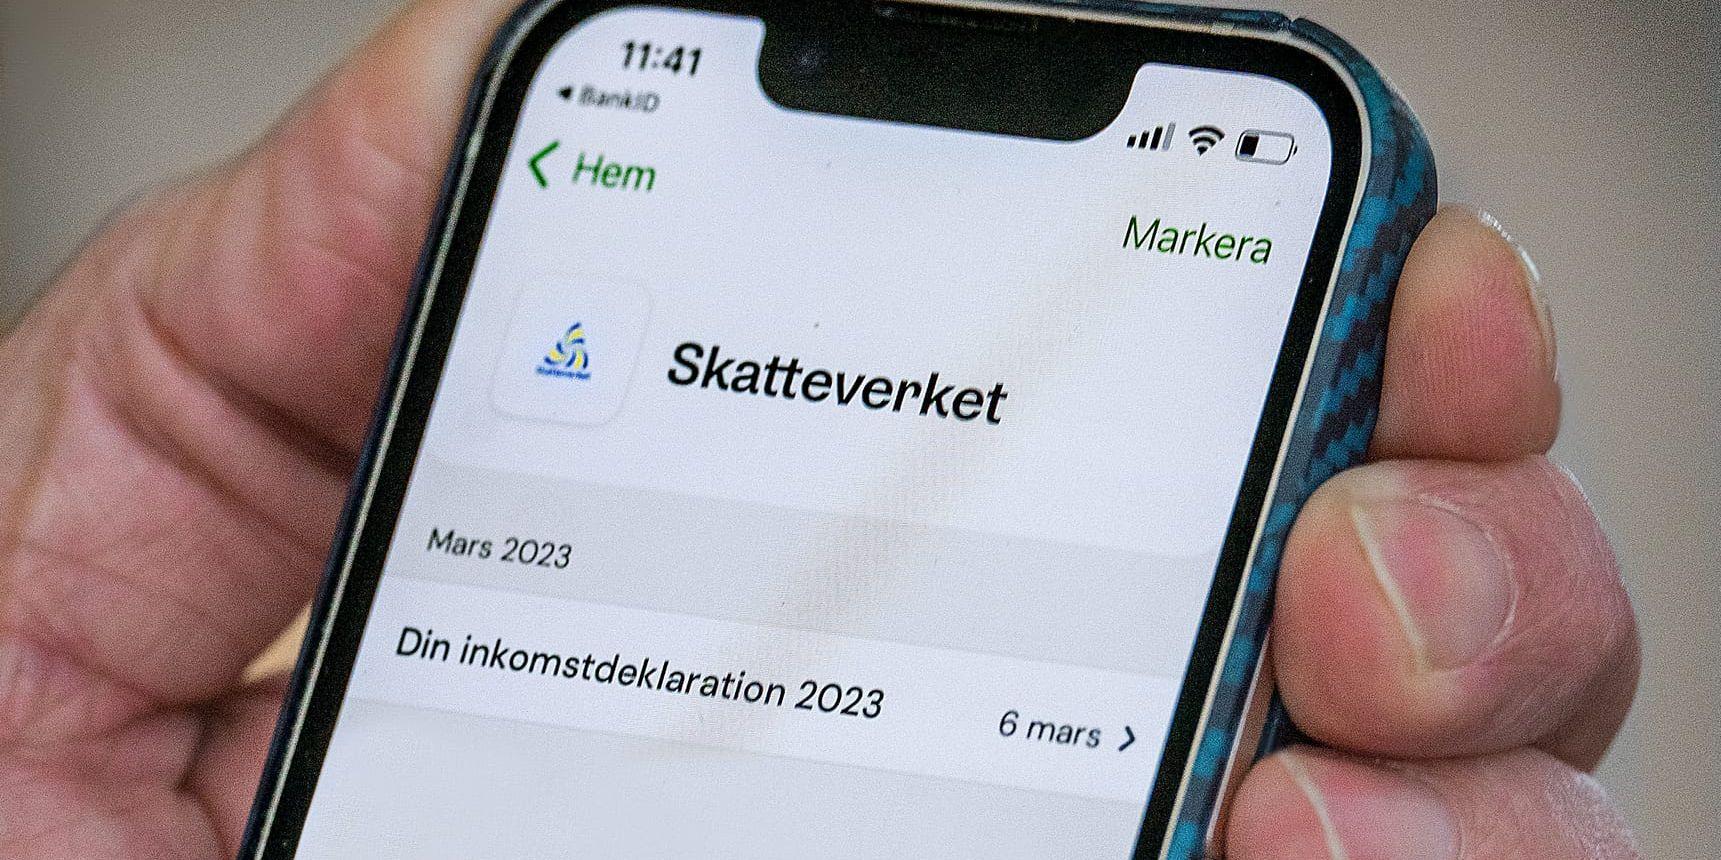 1,5 miljoner svenskar har fått fel deklarationsdatum i sina digitala brevlådor i ett utskick från Skatteverket.